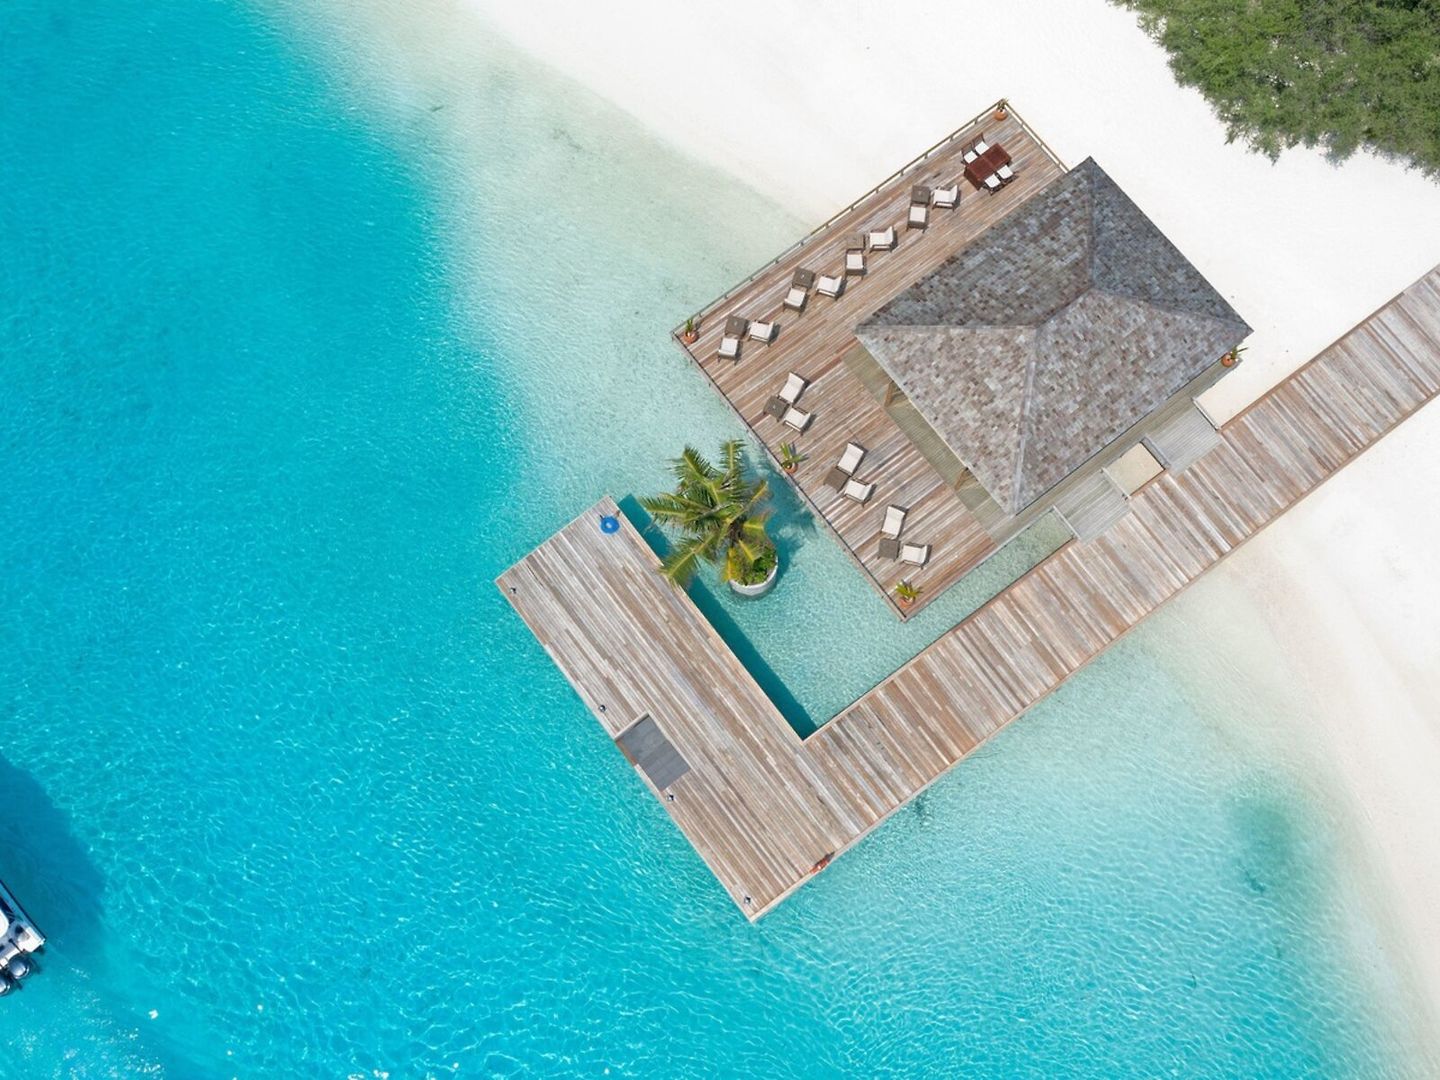 Innahura Maldives Resort – fotka 3